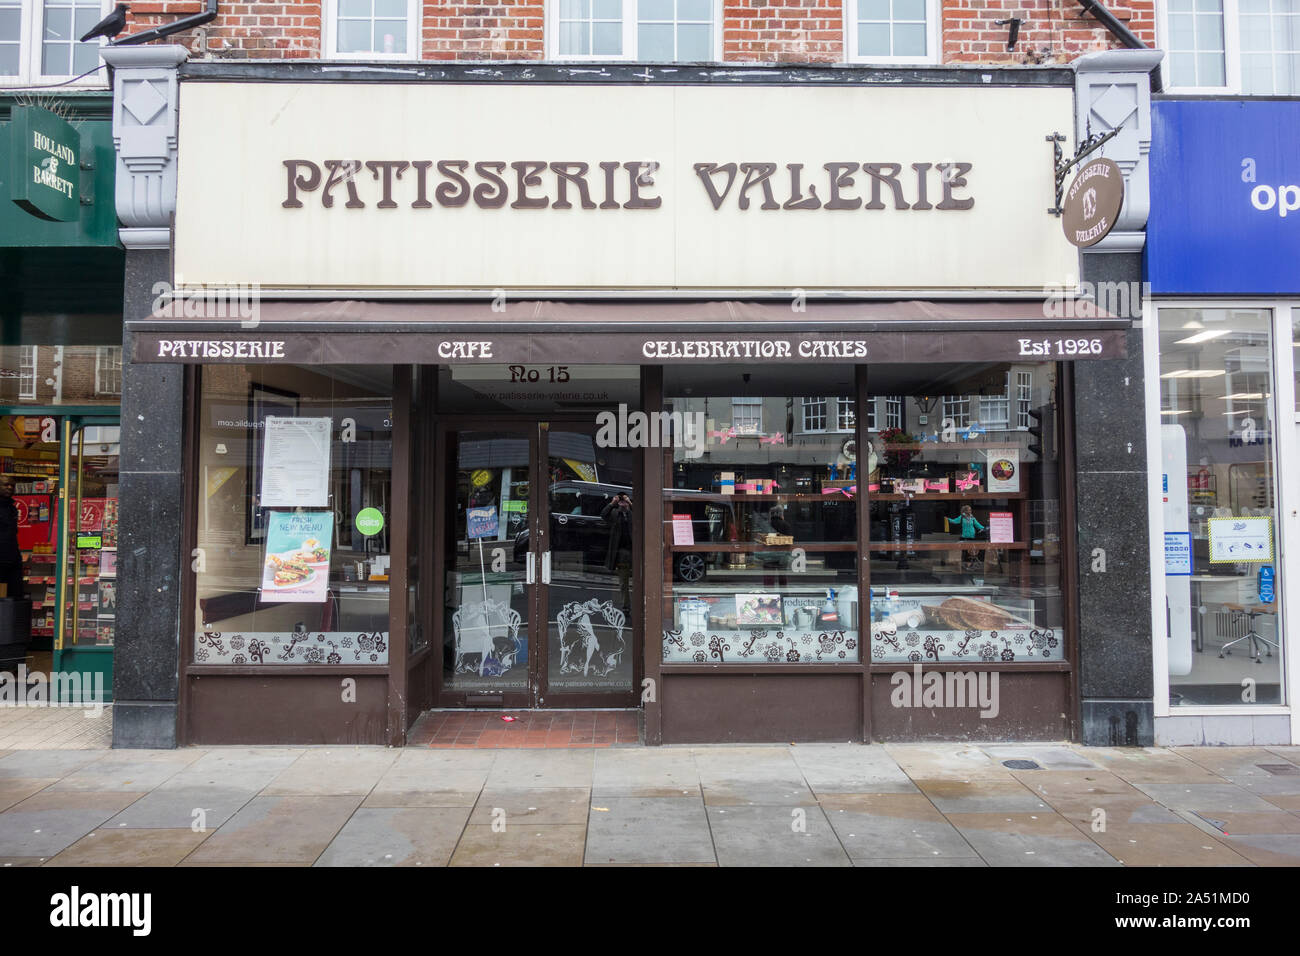 Boutique à l'extérieur de l'avant-fermé maintenant Patisserie Valerie cafe chaîne, Twickenham, London, UK Banque D'Images